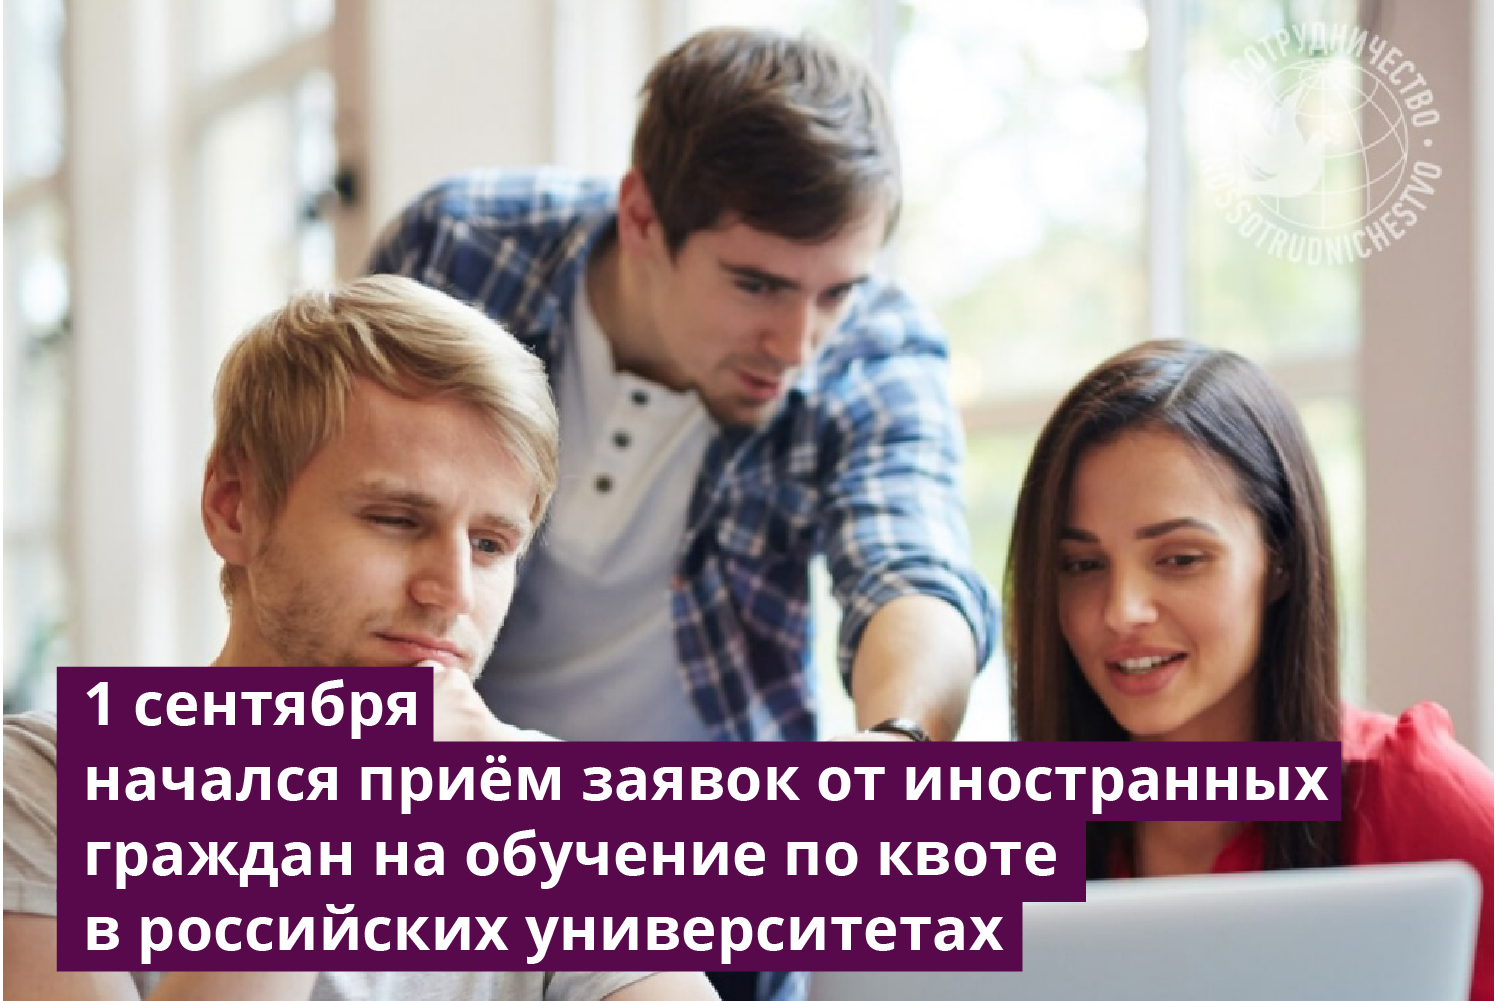 Открыт прием заявок от иностранных граждан на обучение в российских вузах.